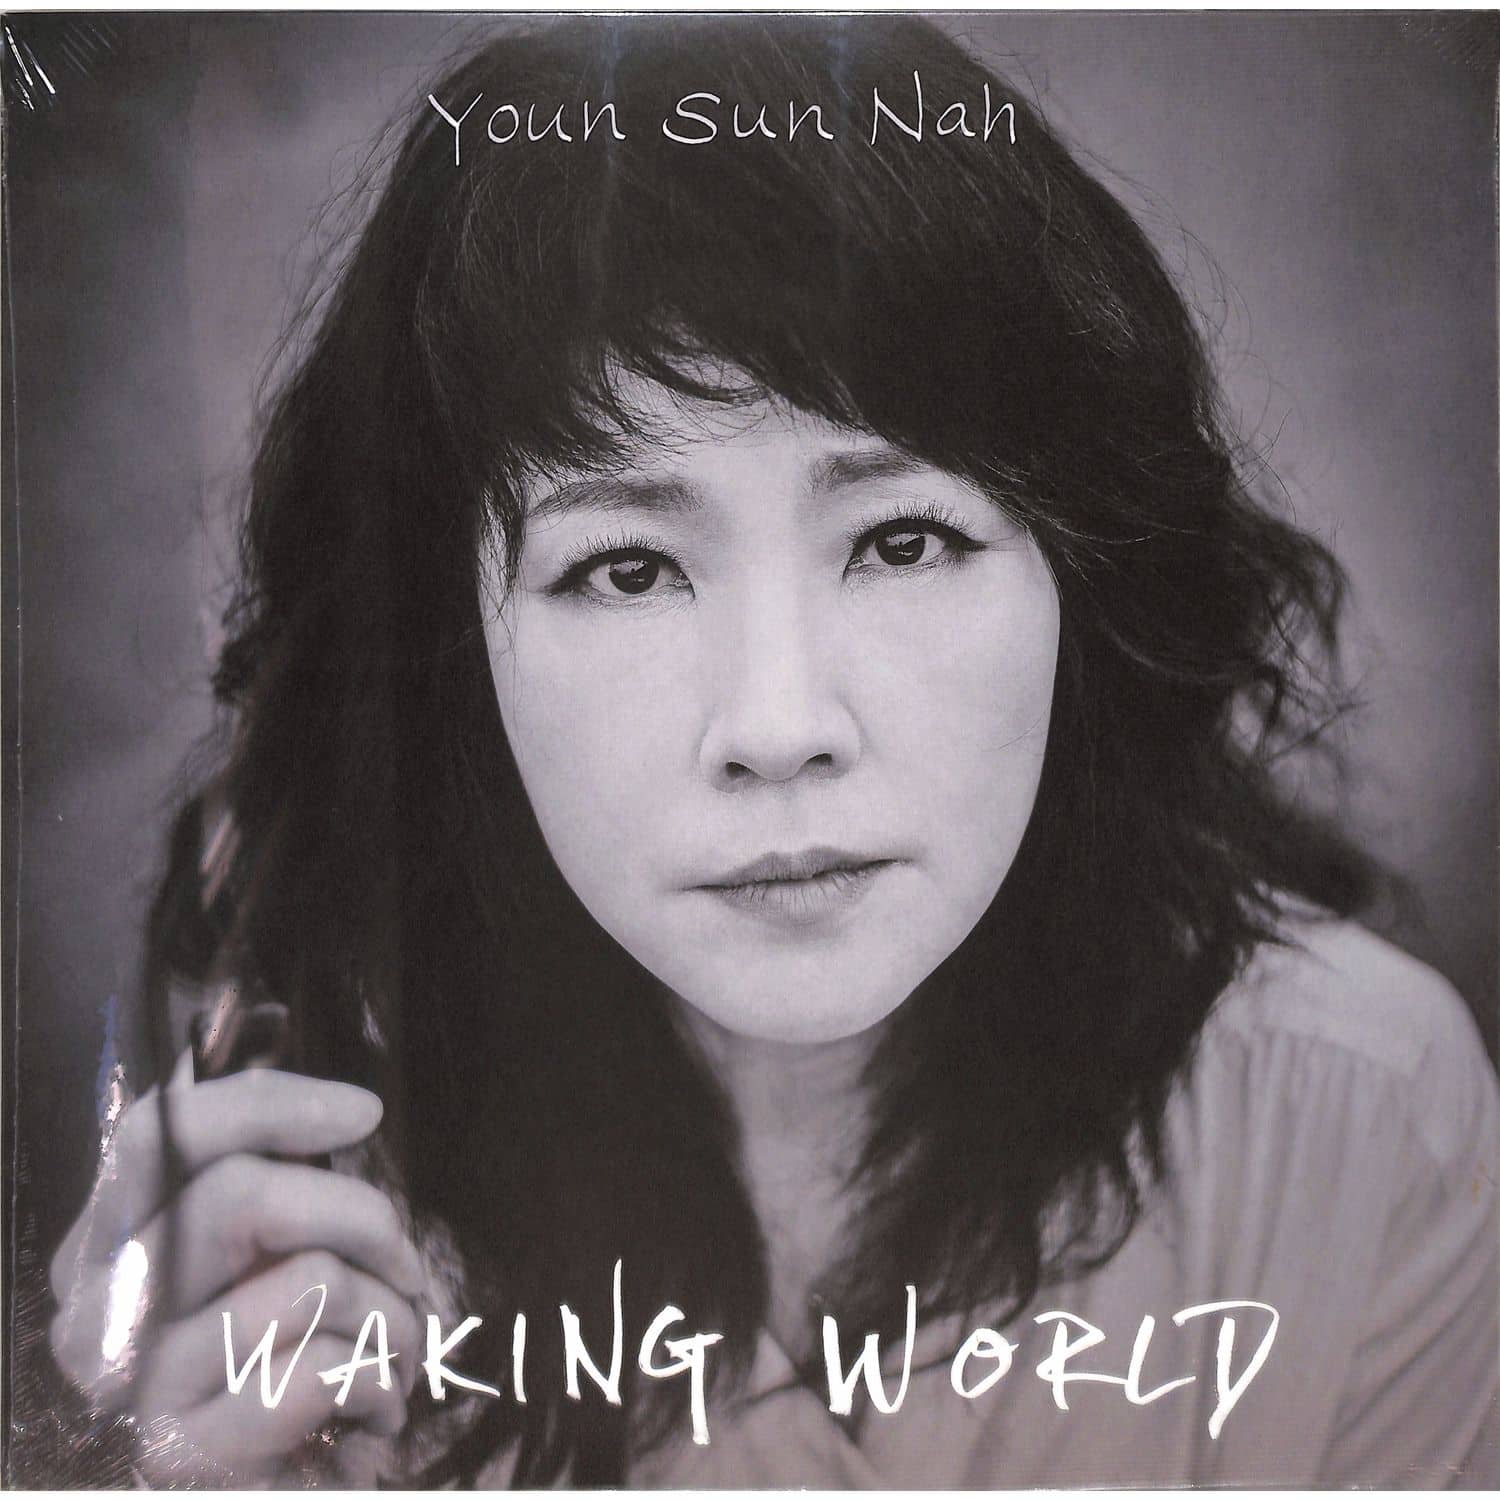 Youn Sun Nah - WAKING WORLD 